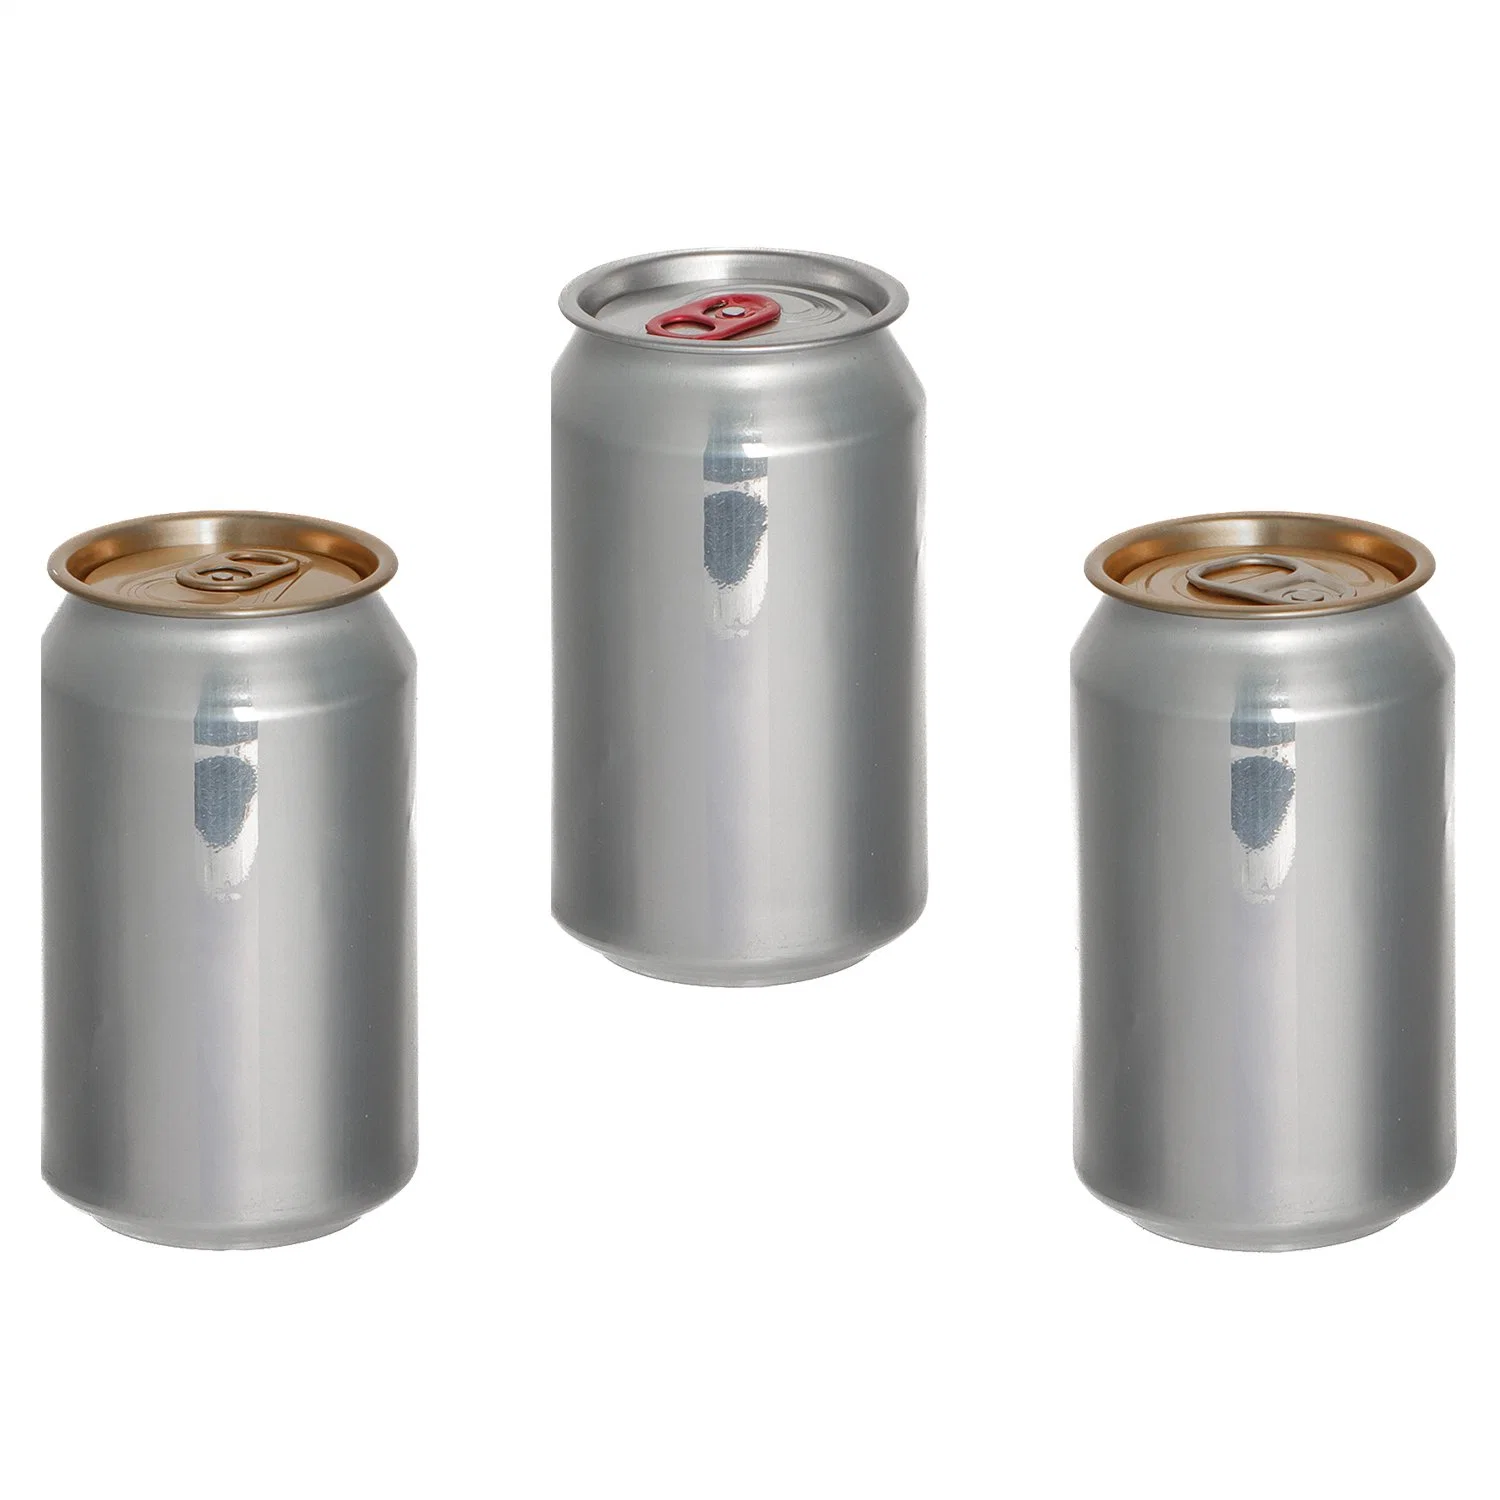 Heißer Verkauf GetränkeDose 330ml Aluminium Dose für Säfte Soda Getränkeverpackung